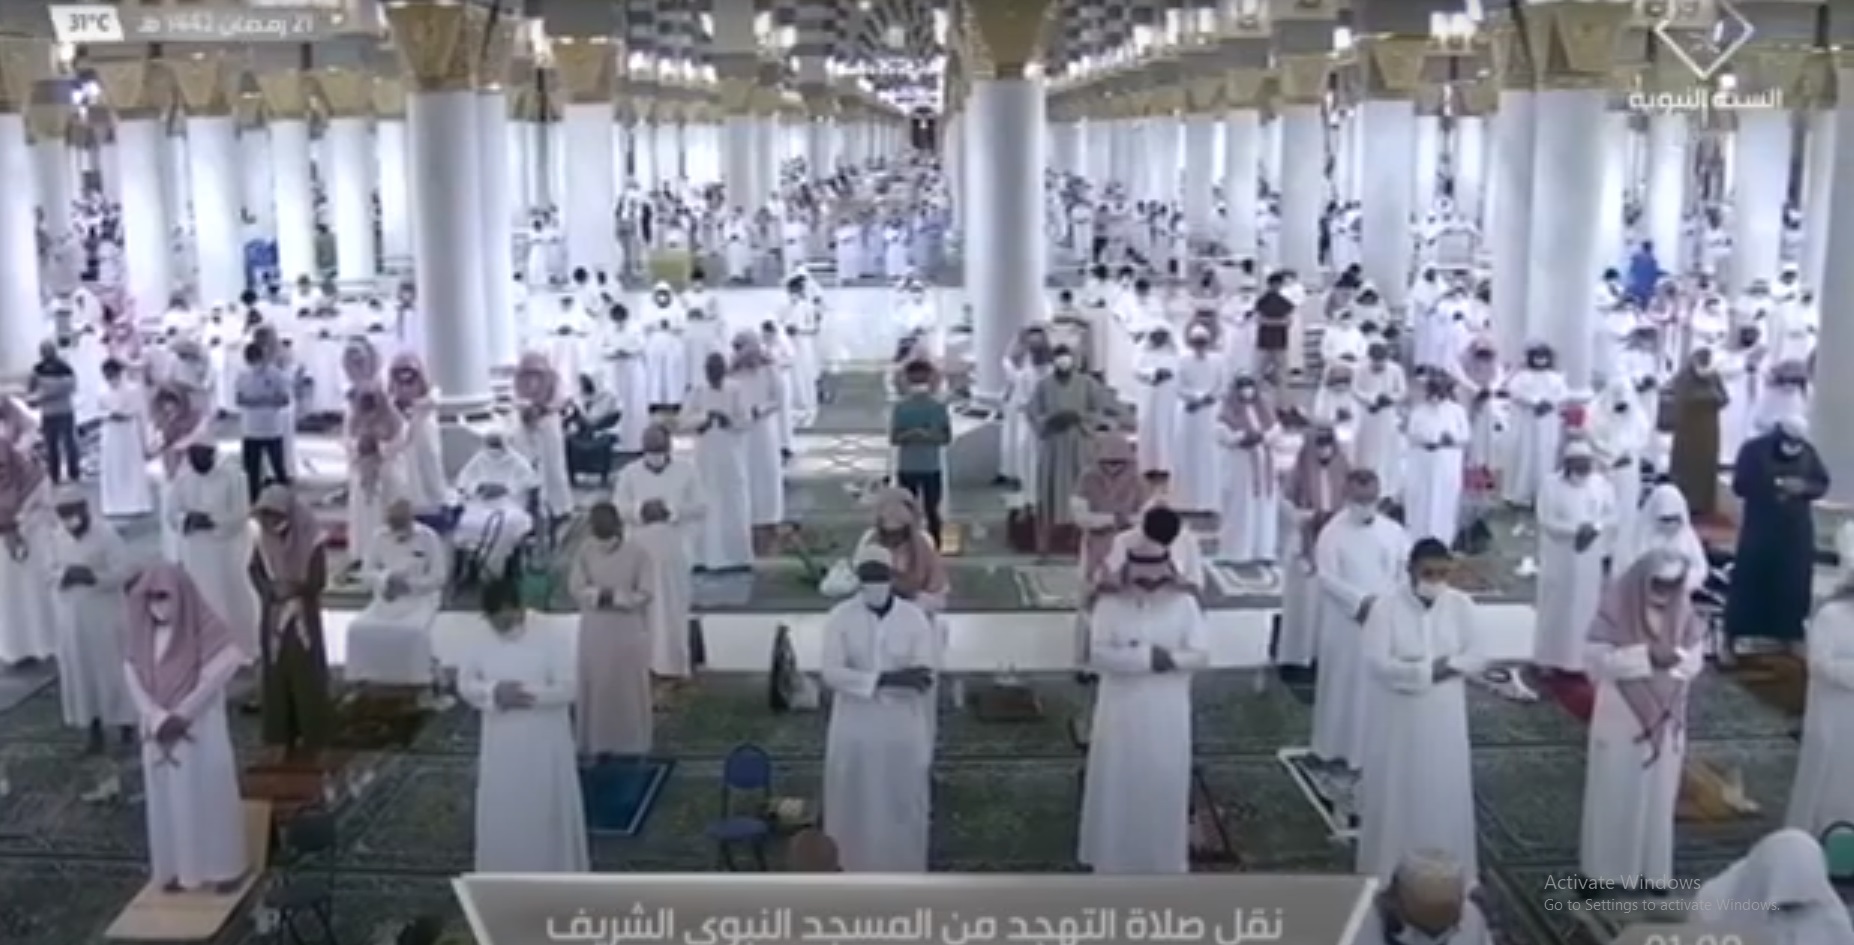 الحذيفي يؤم المصلين في صلاة التهجد بالمسجد النبوي ليلة 21 رمضان